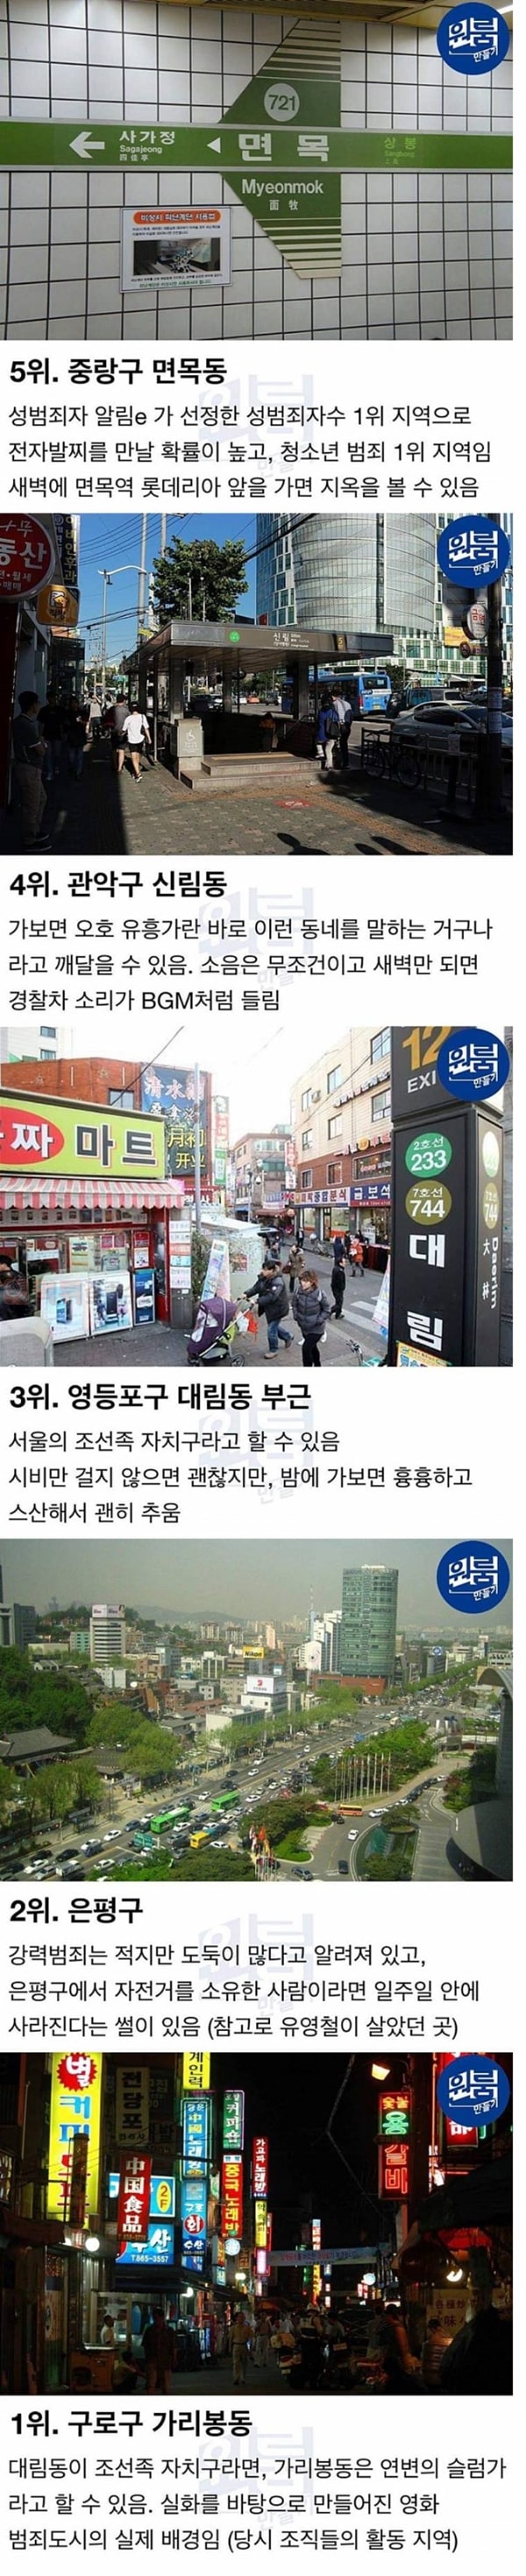 먹튀검증소 유머 서울에서 방 구할 때 믿고 거르는 지역 5곳